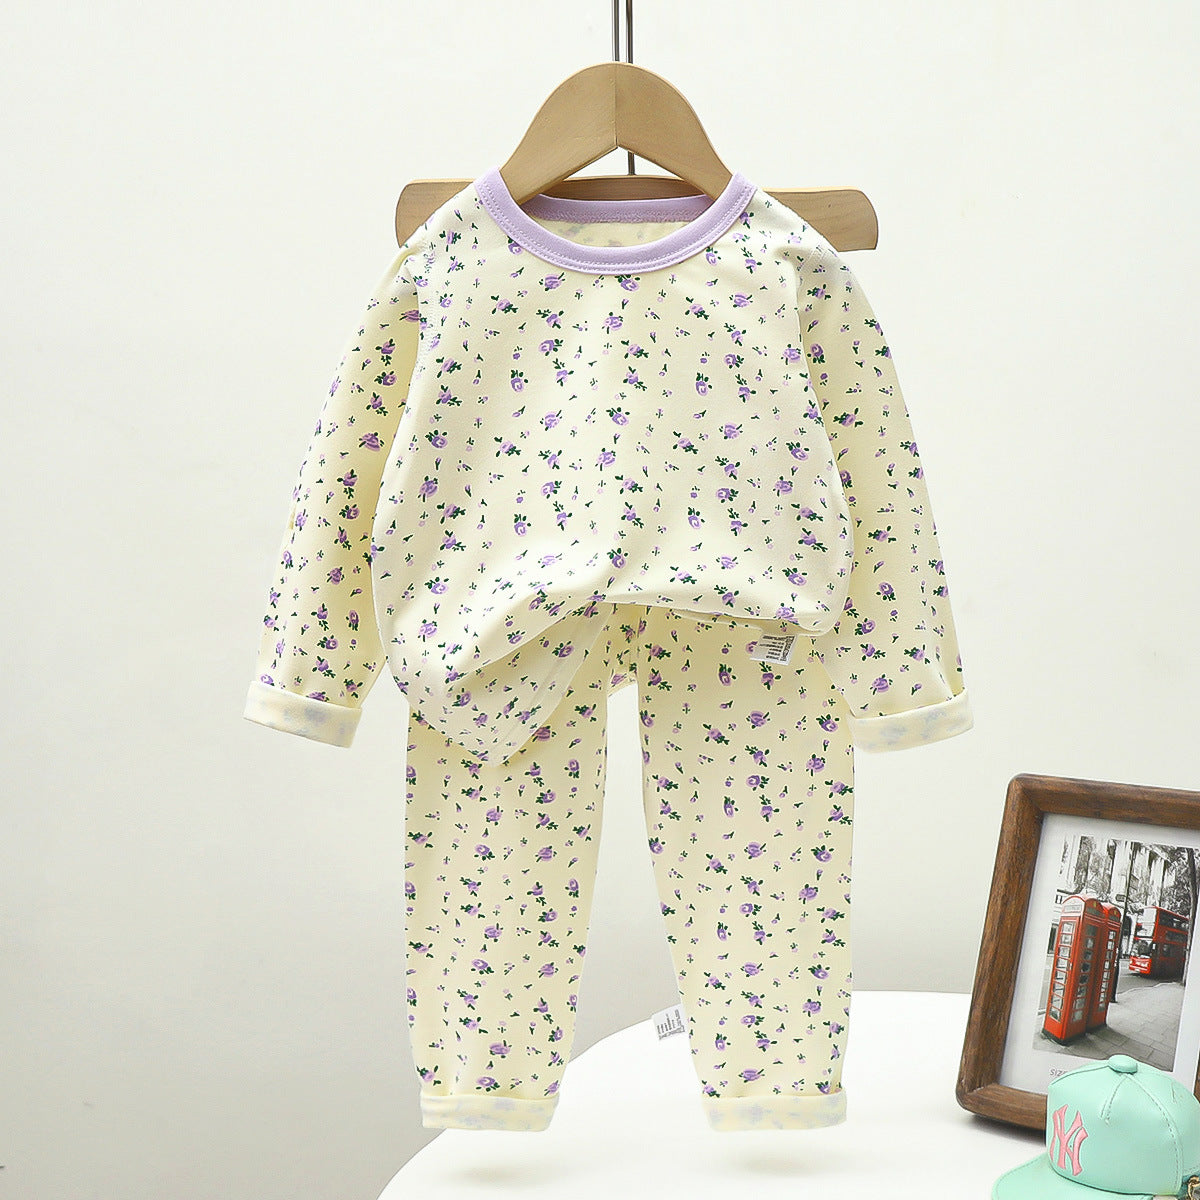 [351372] - Baju Tidur Setelan Piyama Import Anak Cewek - Motif Lavender Flowers